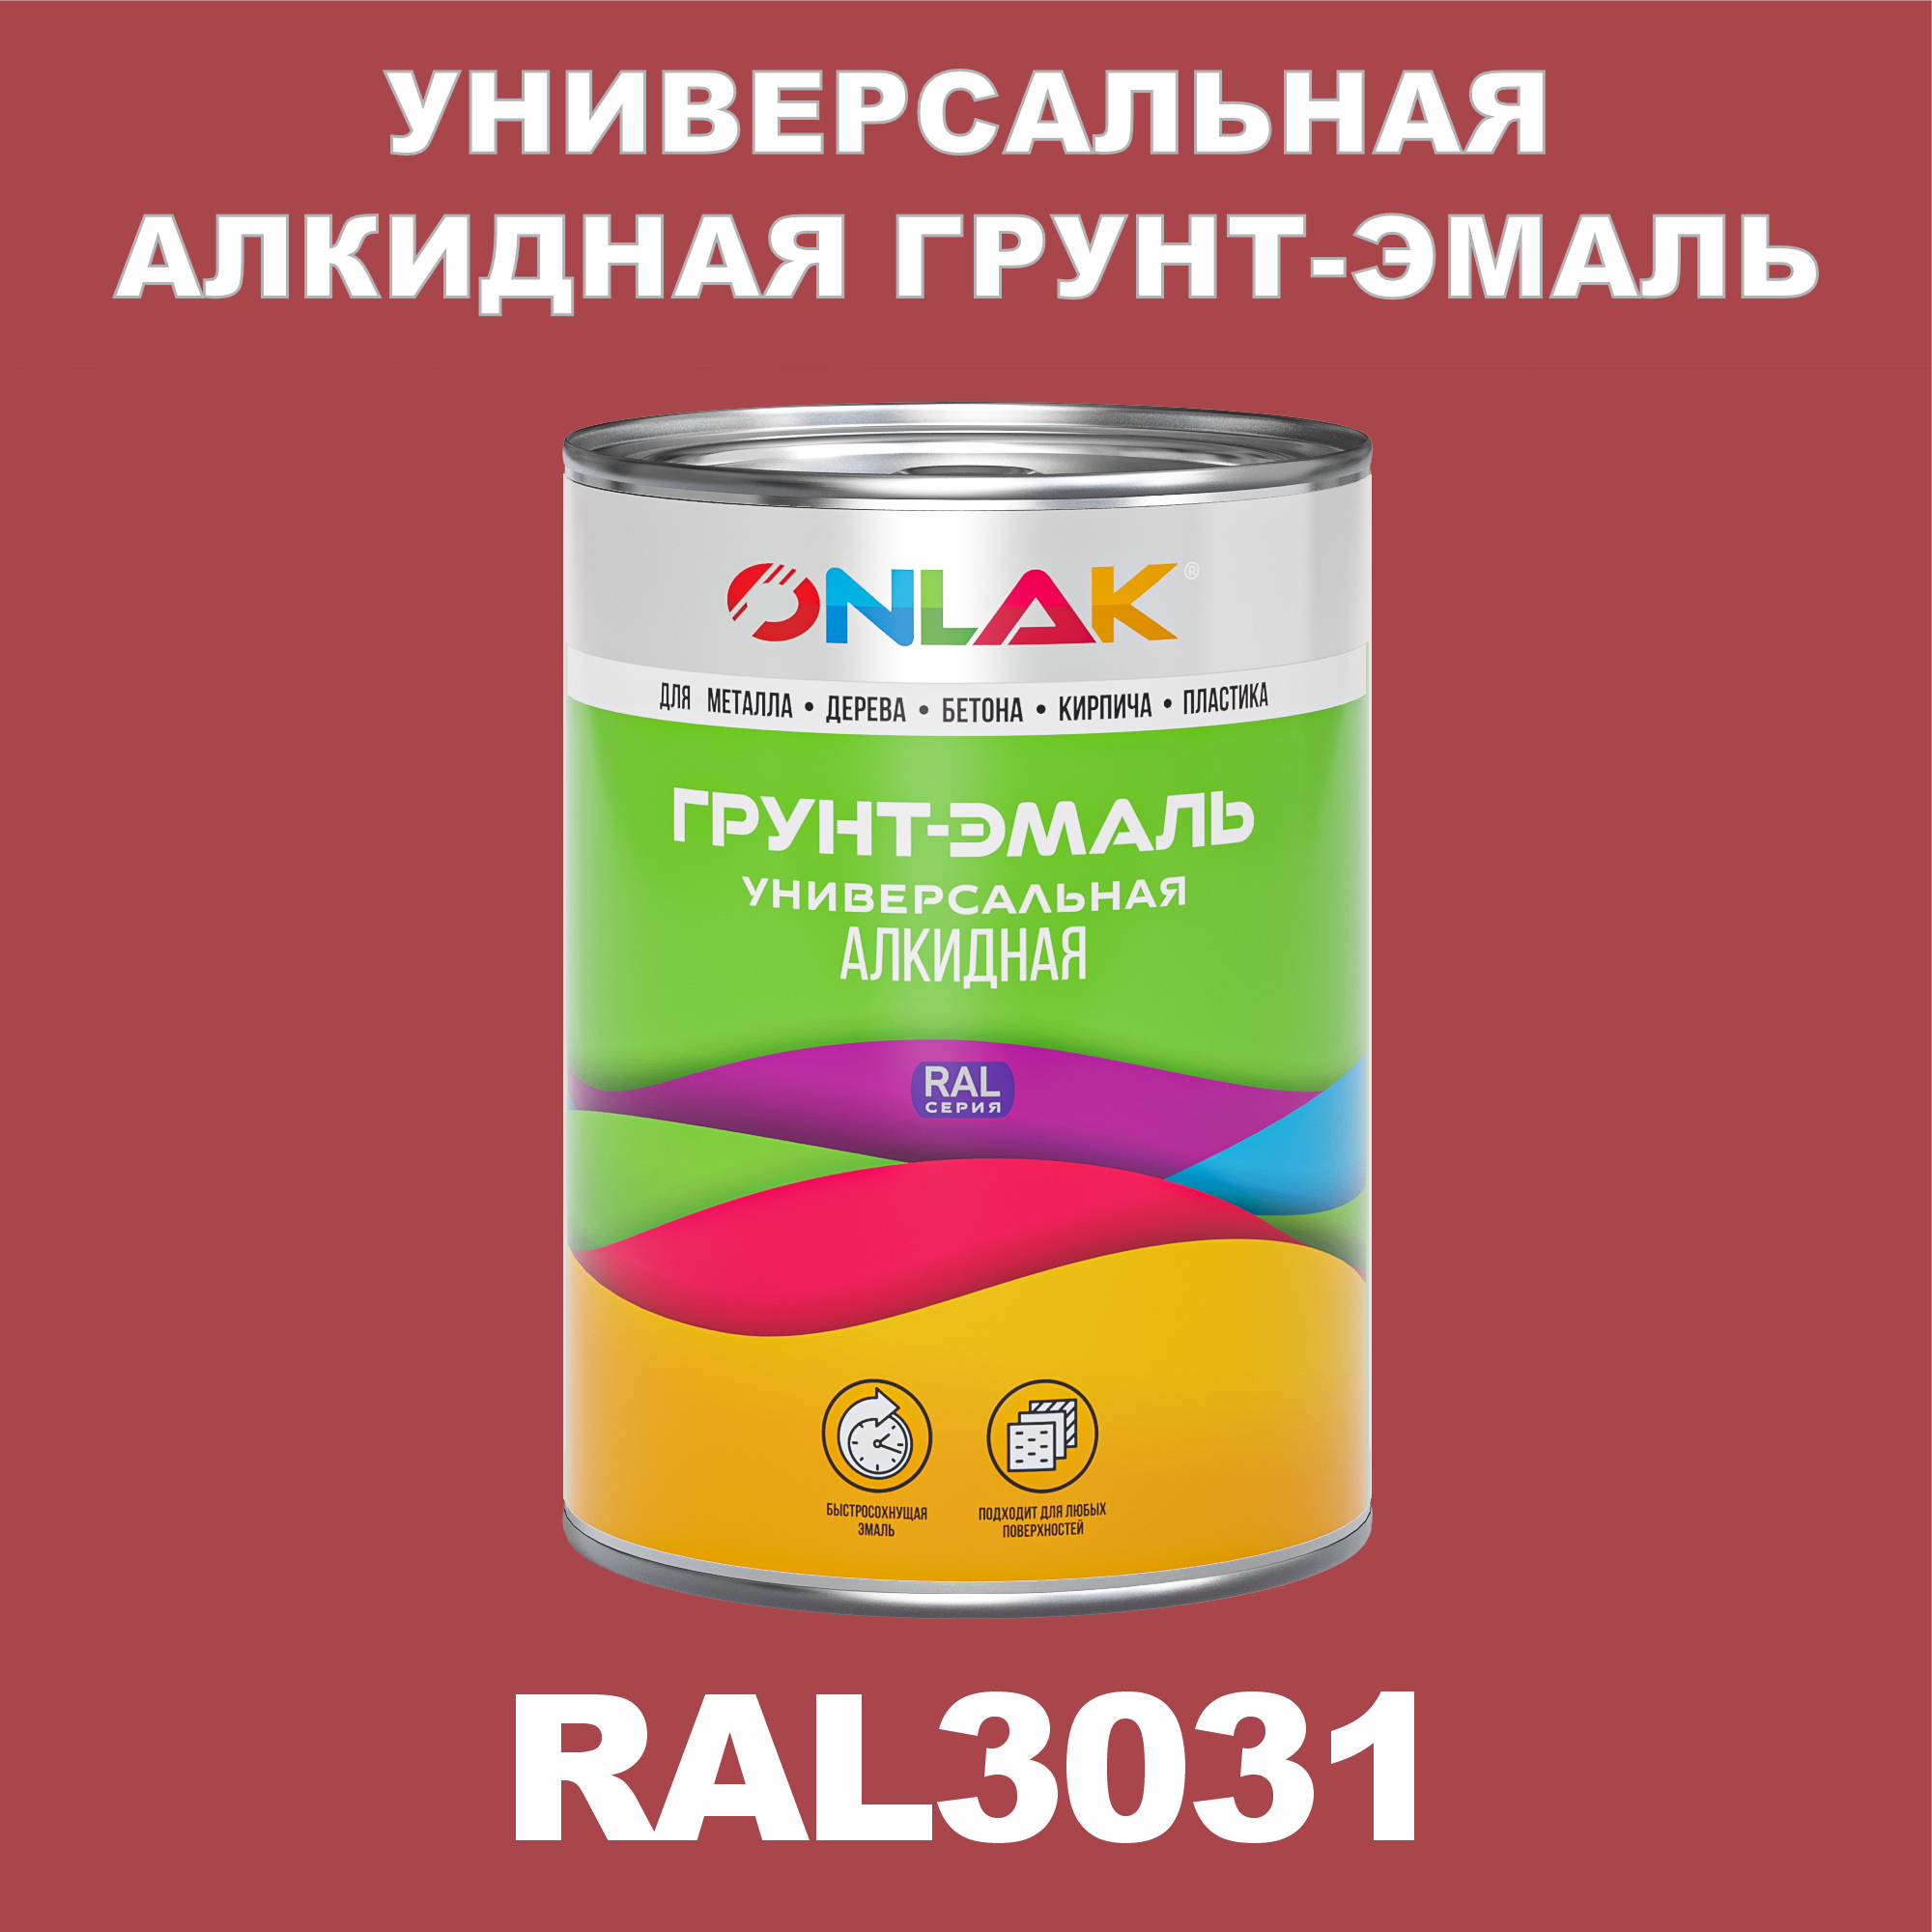 Грунт-эмаль ONLAK 1К RAL3031 антикоррозионная алкидная по металлу по ржавчине 1 кг грунт эмаль yollo по ржавчине алкидная зеленая 0 9 кг